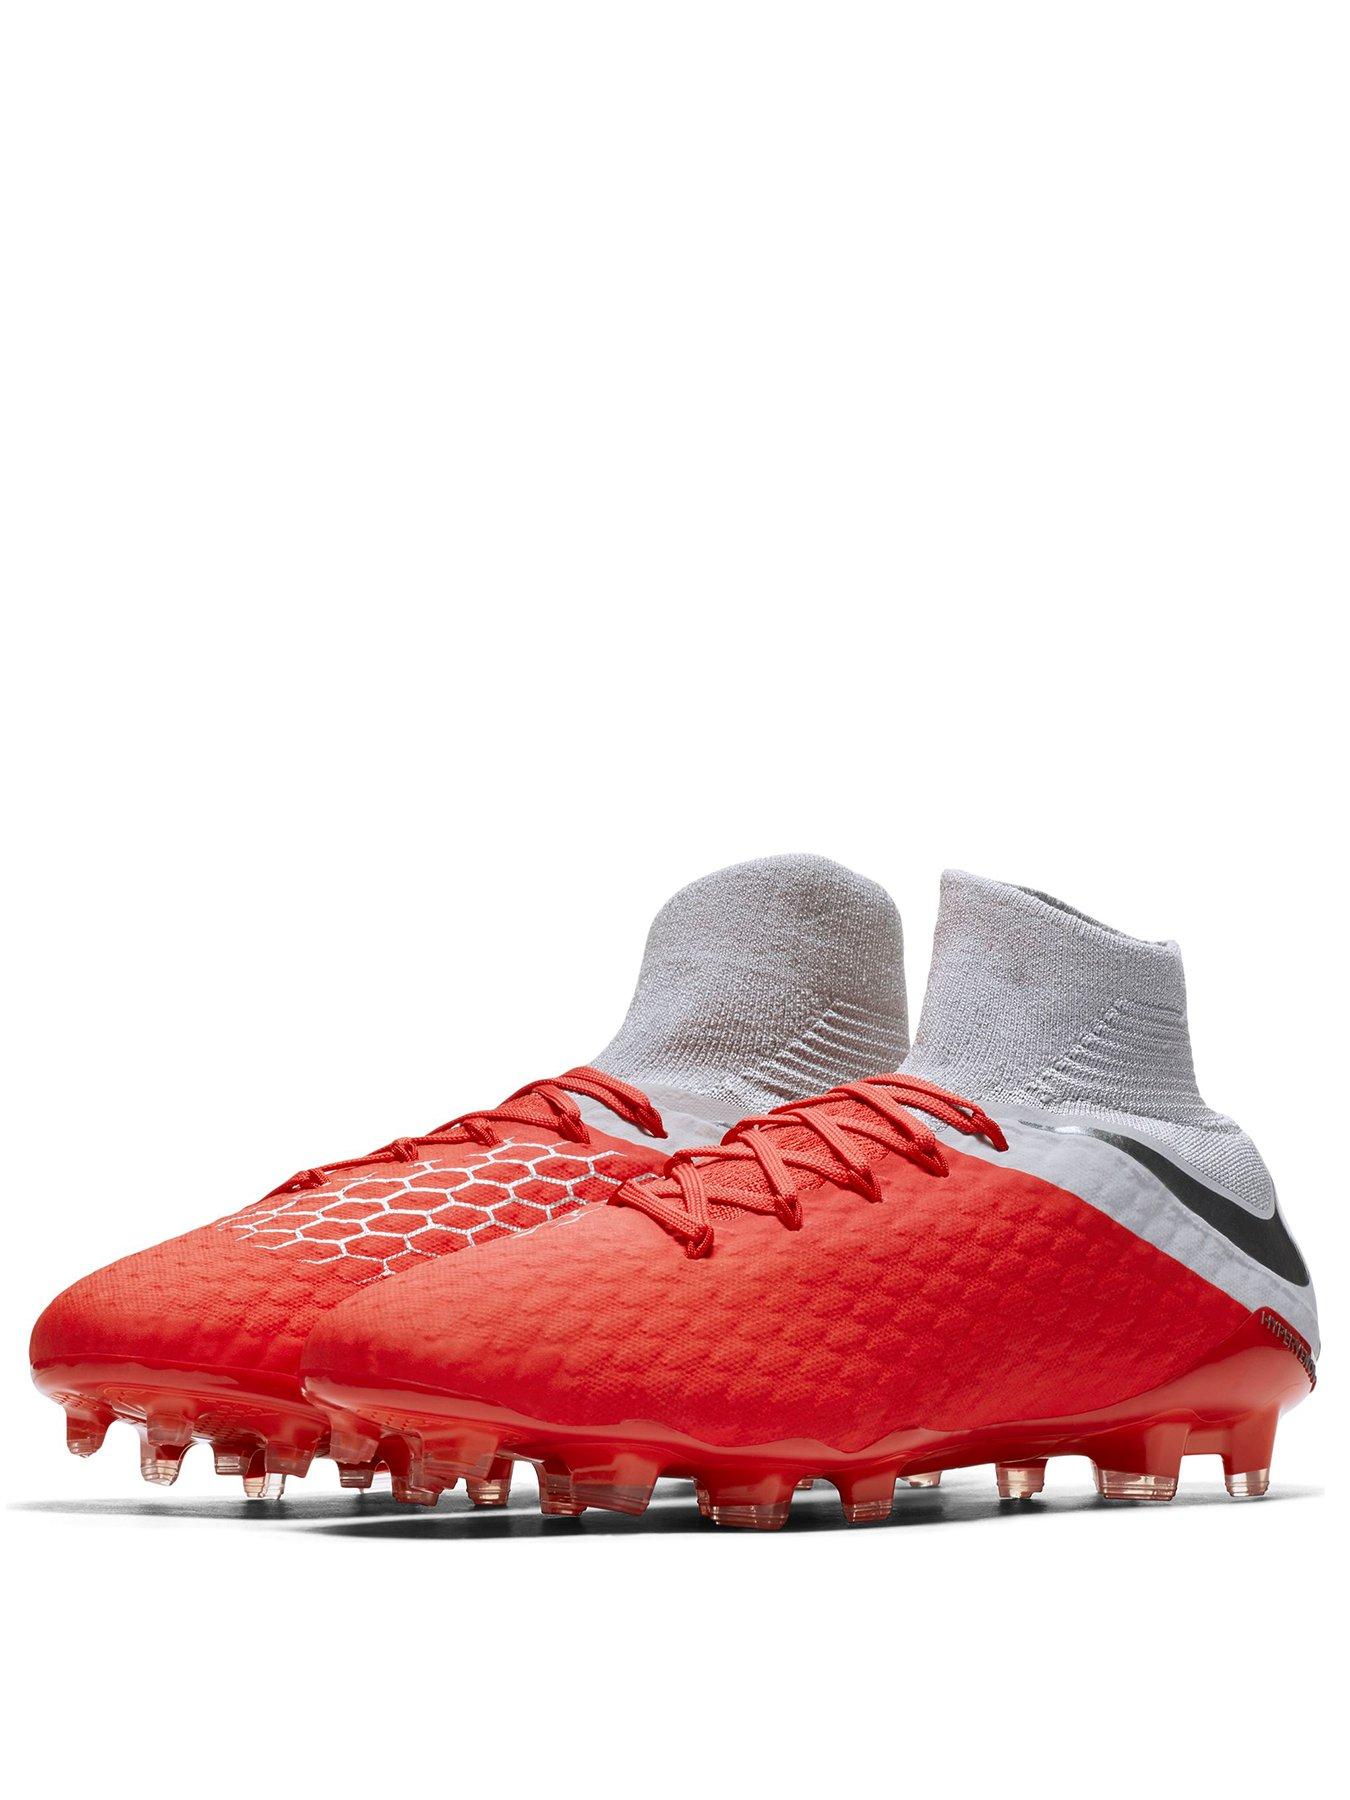 Nike Hypervenom Phantom 3 Tc Fg, Chaussures de Football